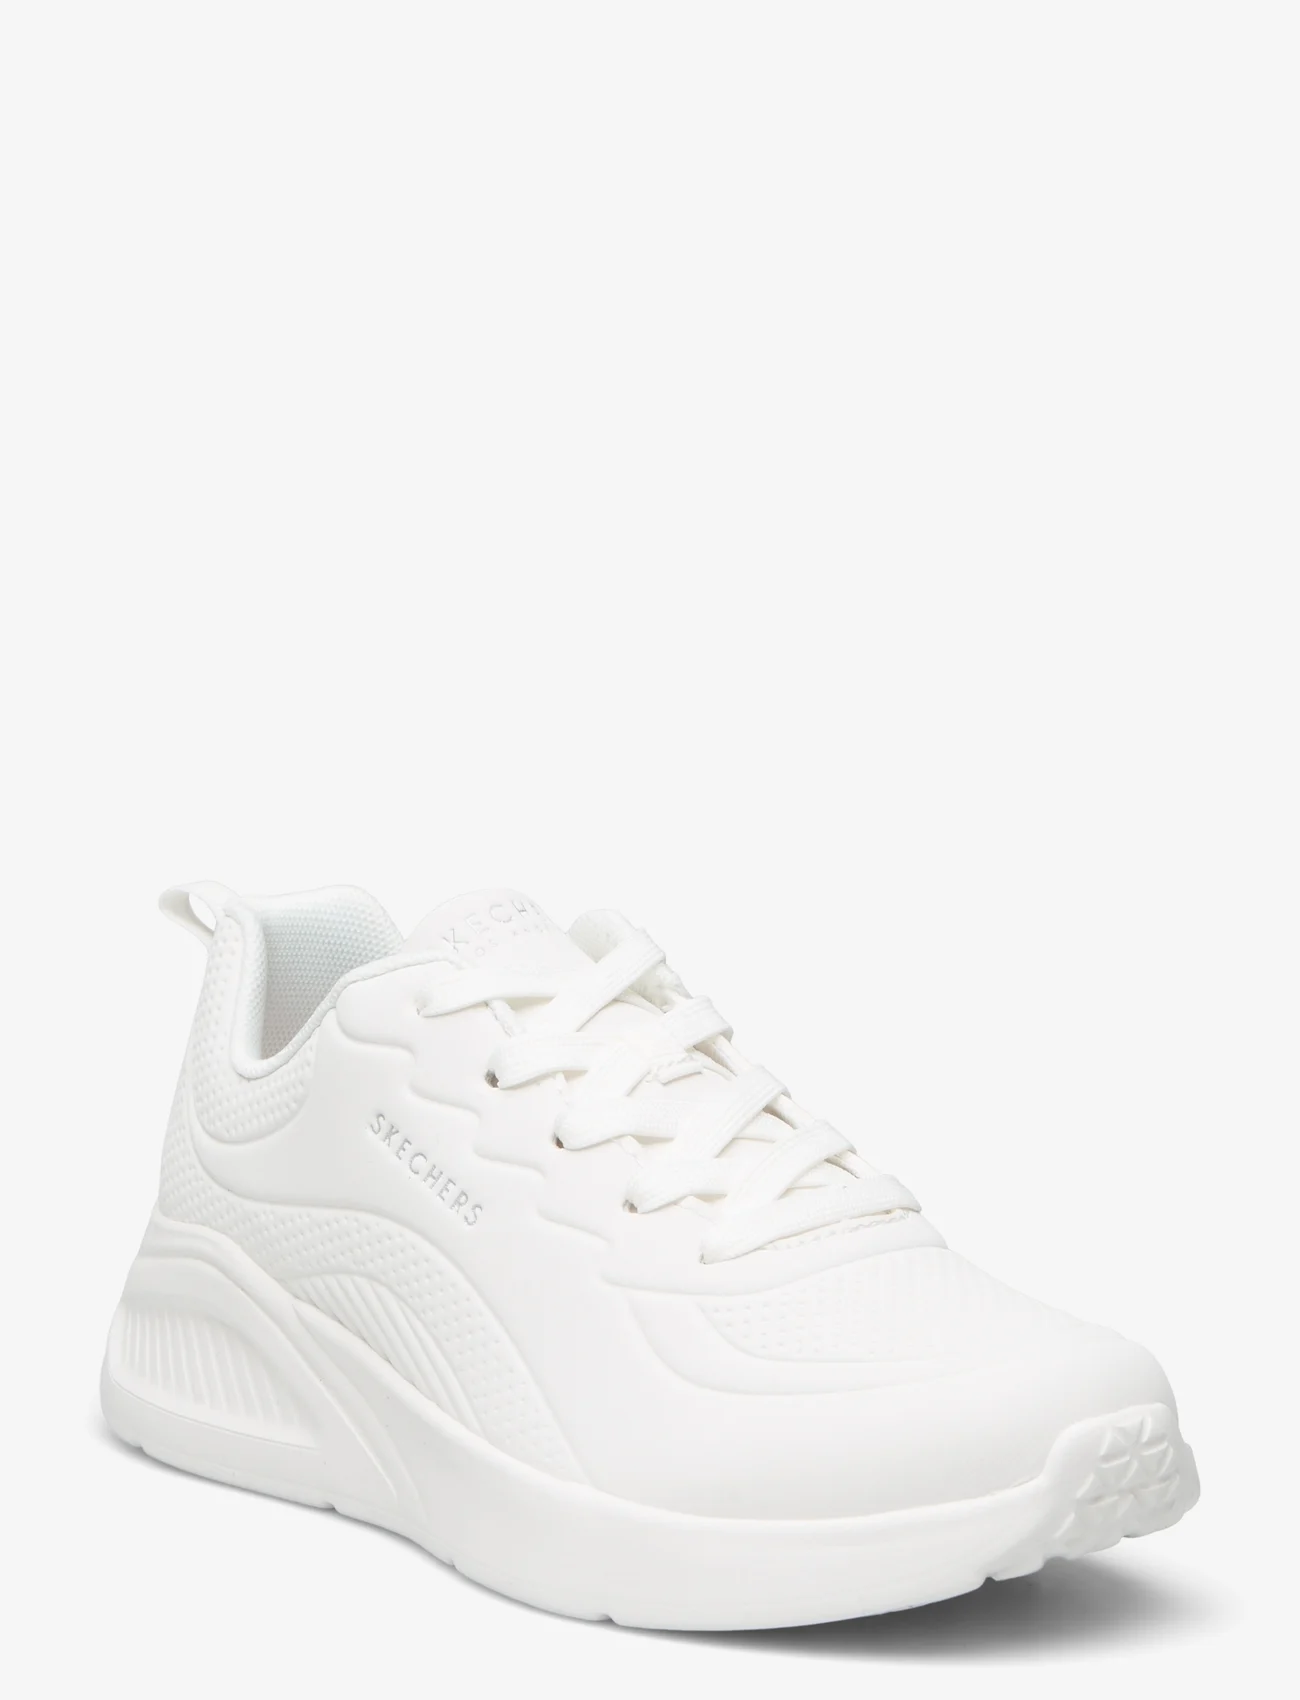 Skechers - Womens Uno Lite - Lighter One - sneakers med lavt skaft - wht white - 0